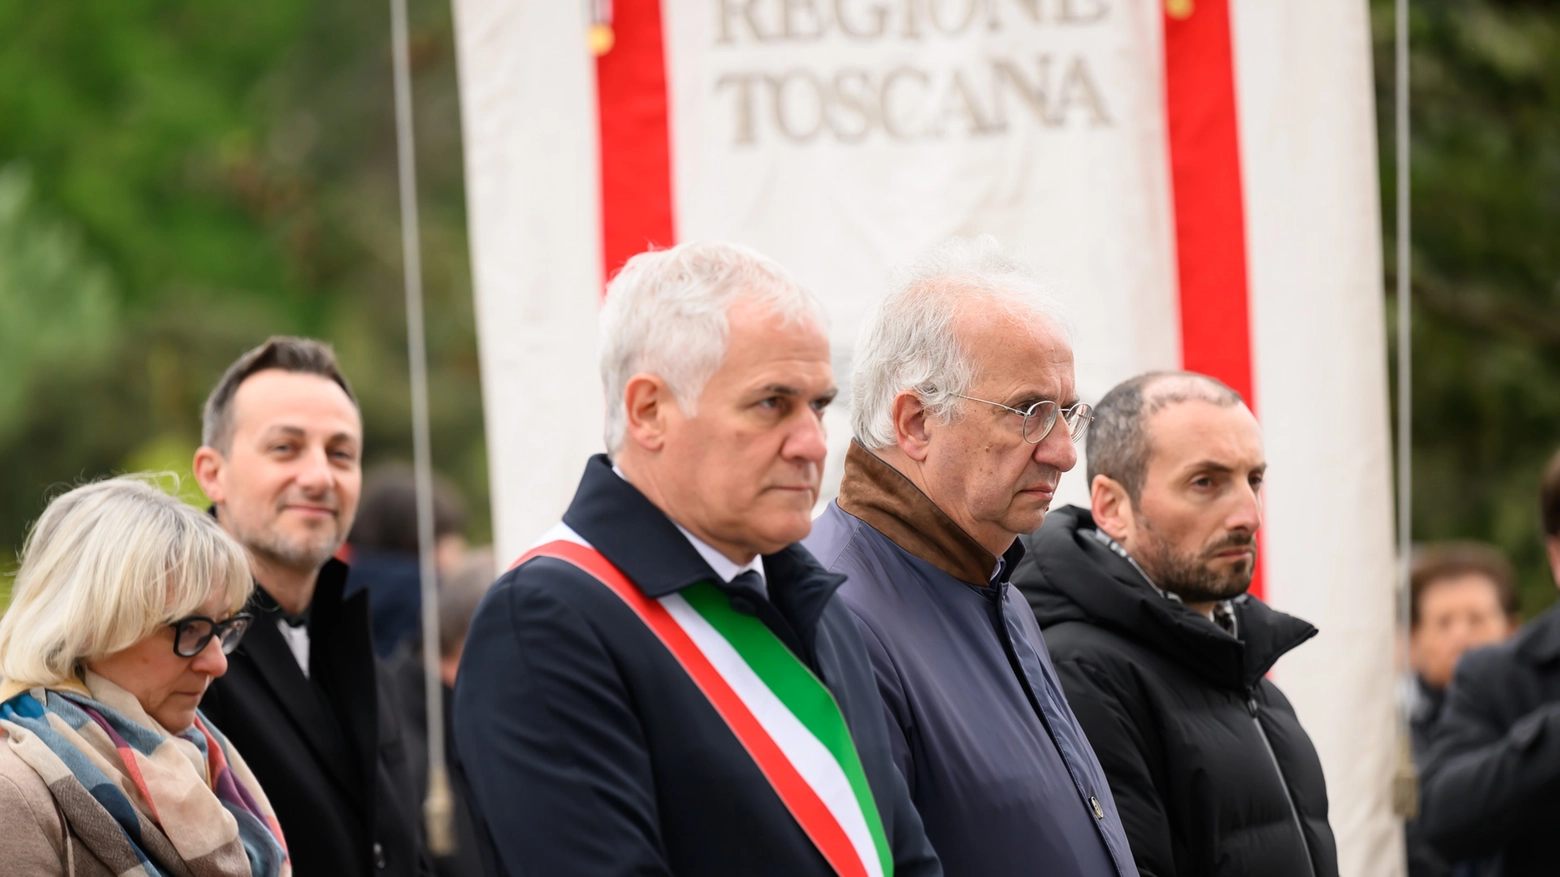 Camaiore, l’orazione di Veltroni: “Il fascismo aveva tolto la libertà agli italiani, l'antifascismo l'ha restituita”